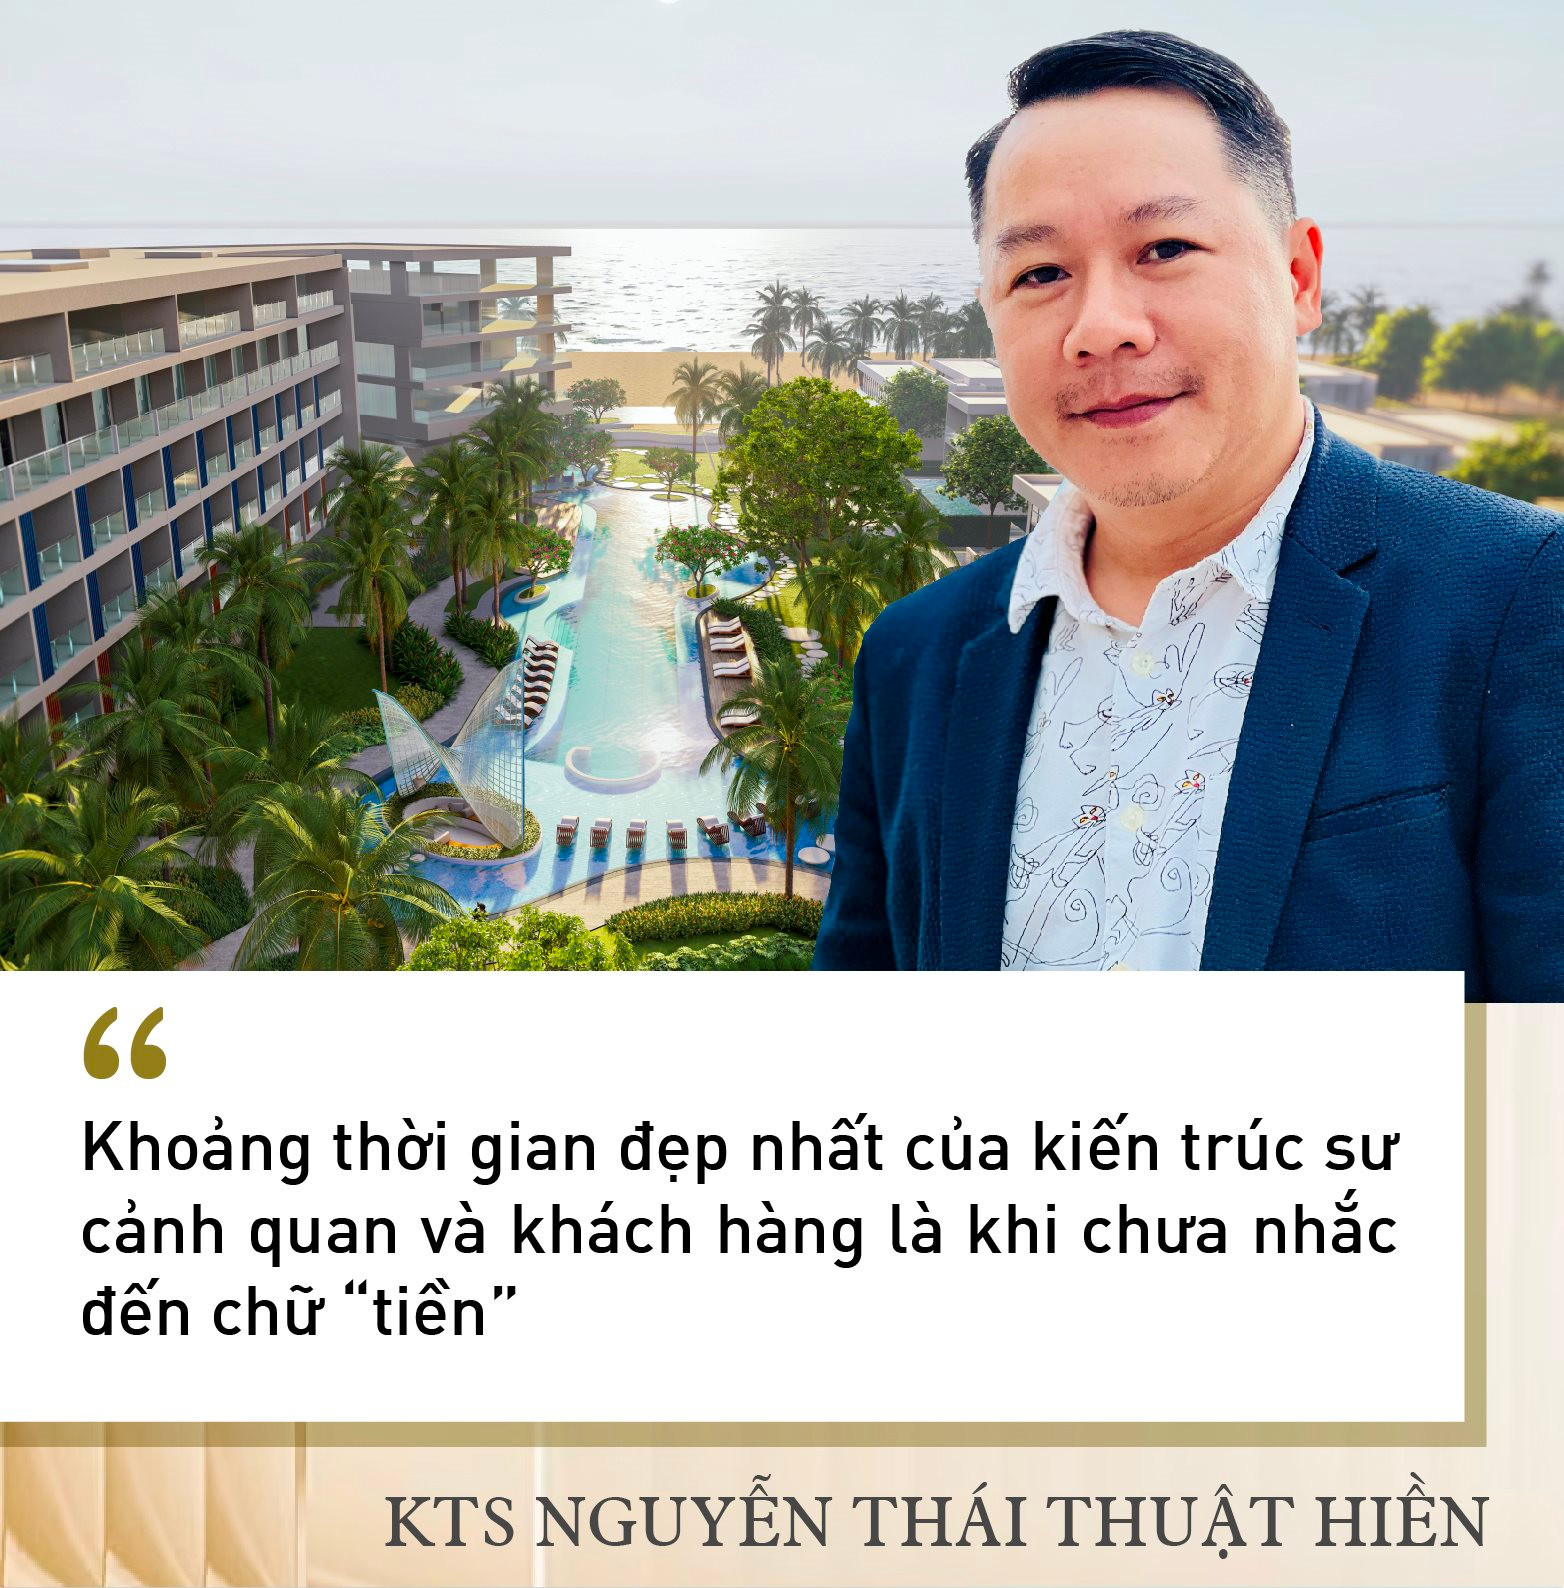 KTS Nguyễn Thái Thuật Hiền: Làm thiết kế cảnh quan như cho khách đeo đồng hồ Rolex, phải tiếp cận với người nhiều tiền mới sống được với nghề - Ảnh 4.